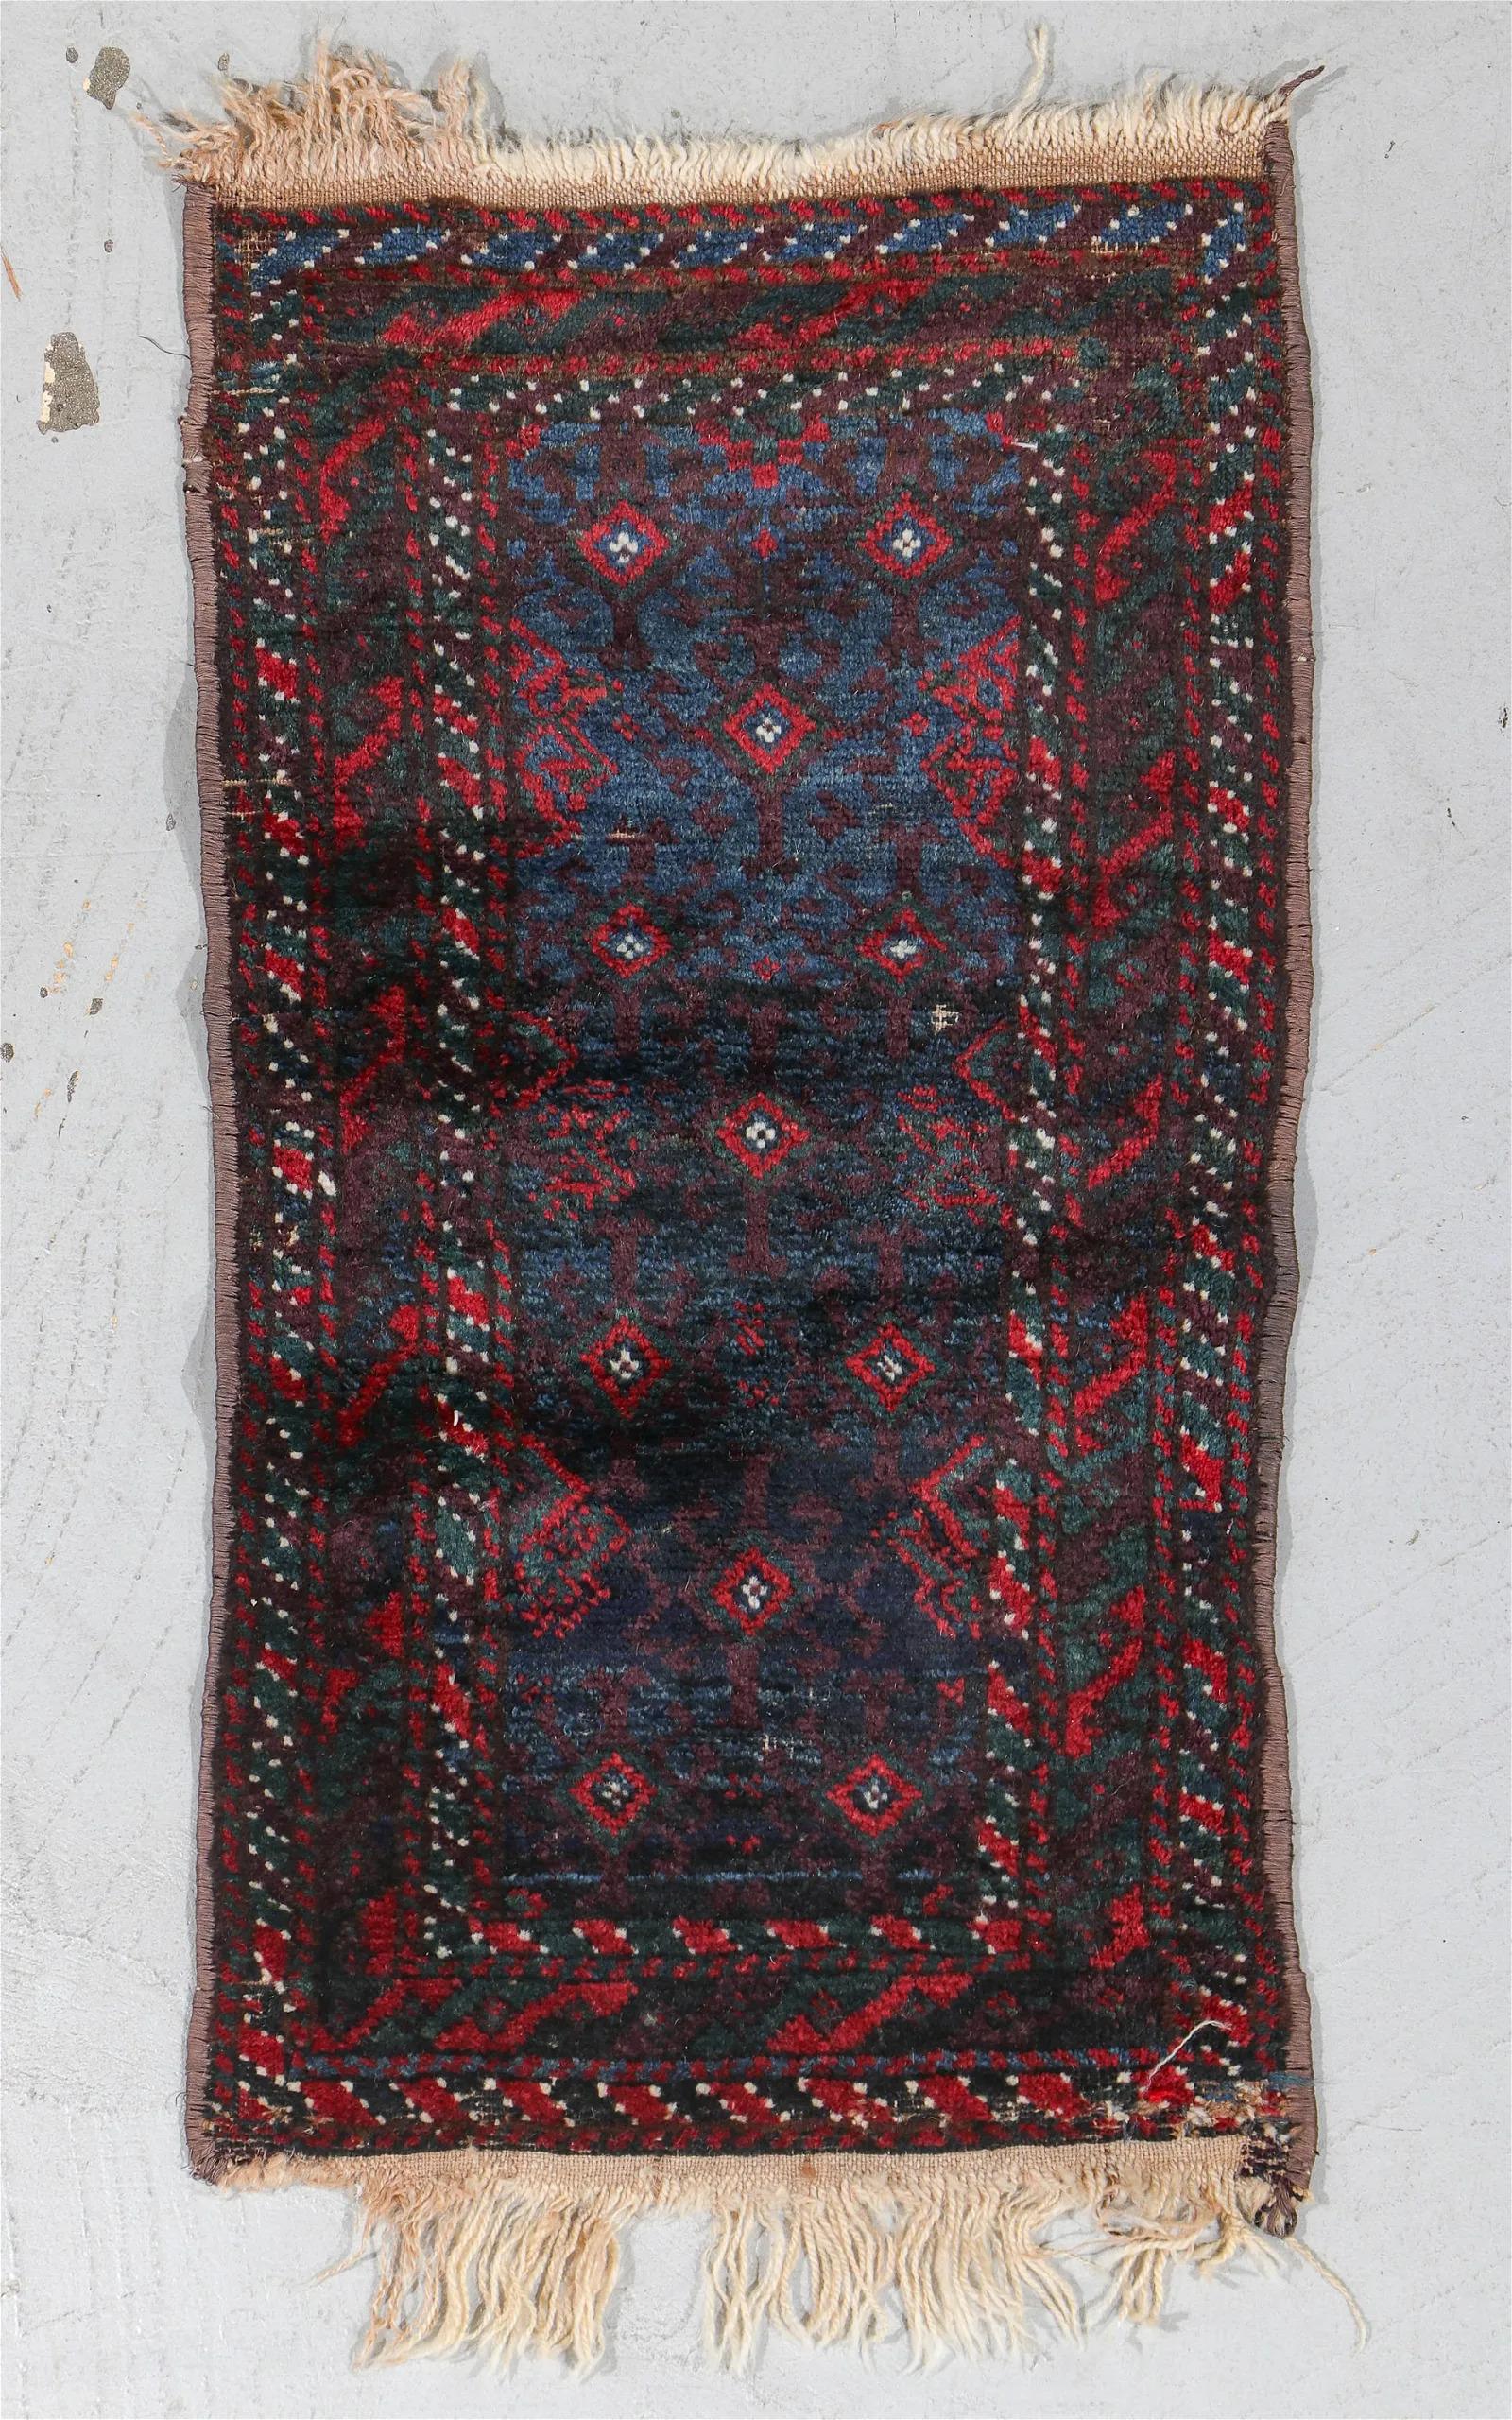 Entdecken Sie die Faszination der Stammeskunst mit dieser bemerkenswerten Collection von 9 Beluch Balisht Teppichen, die aus Persien und Afghanistan stammen und auf das späte 19. bis frühe 20. Jahrhundert zurückgehen. Jeder Teppich dieser Kollektion